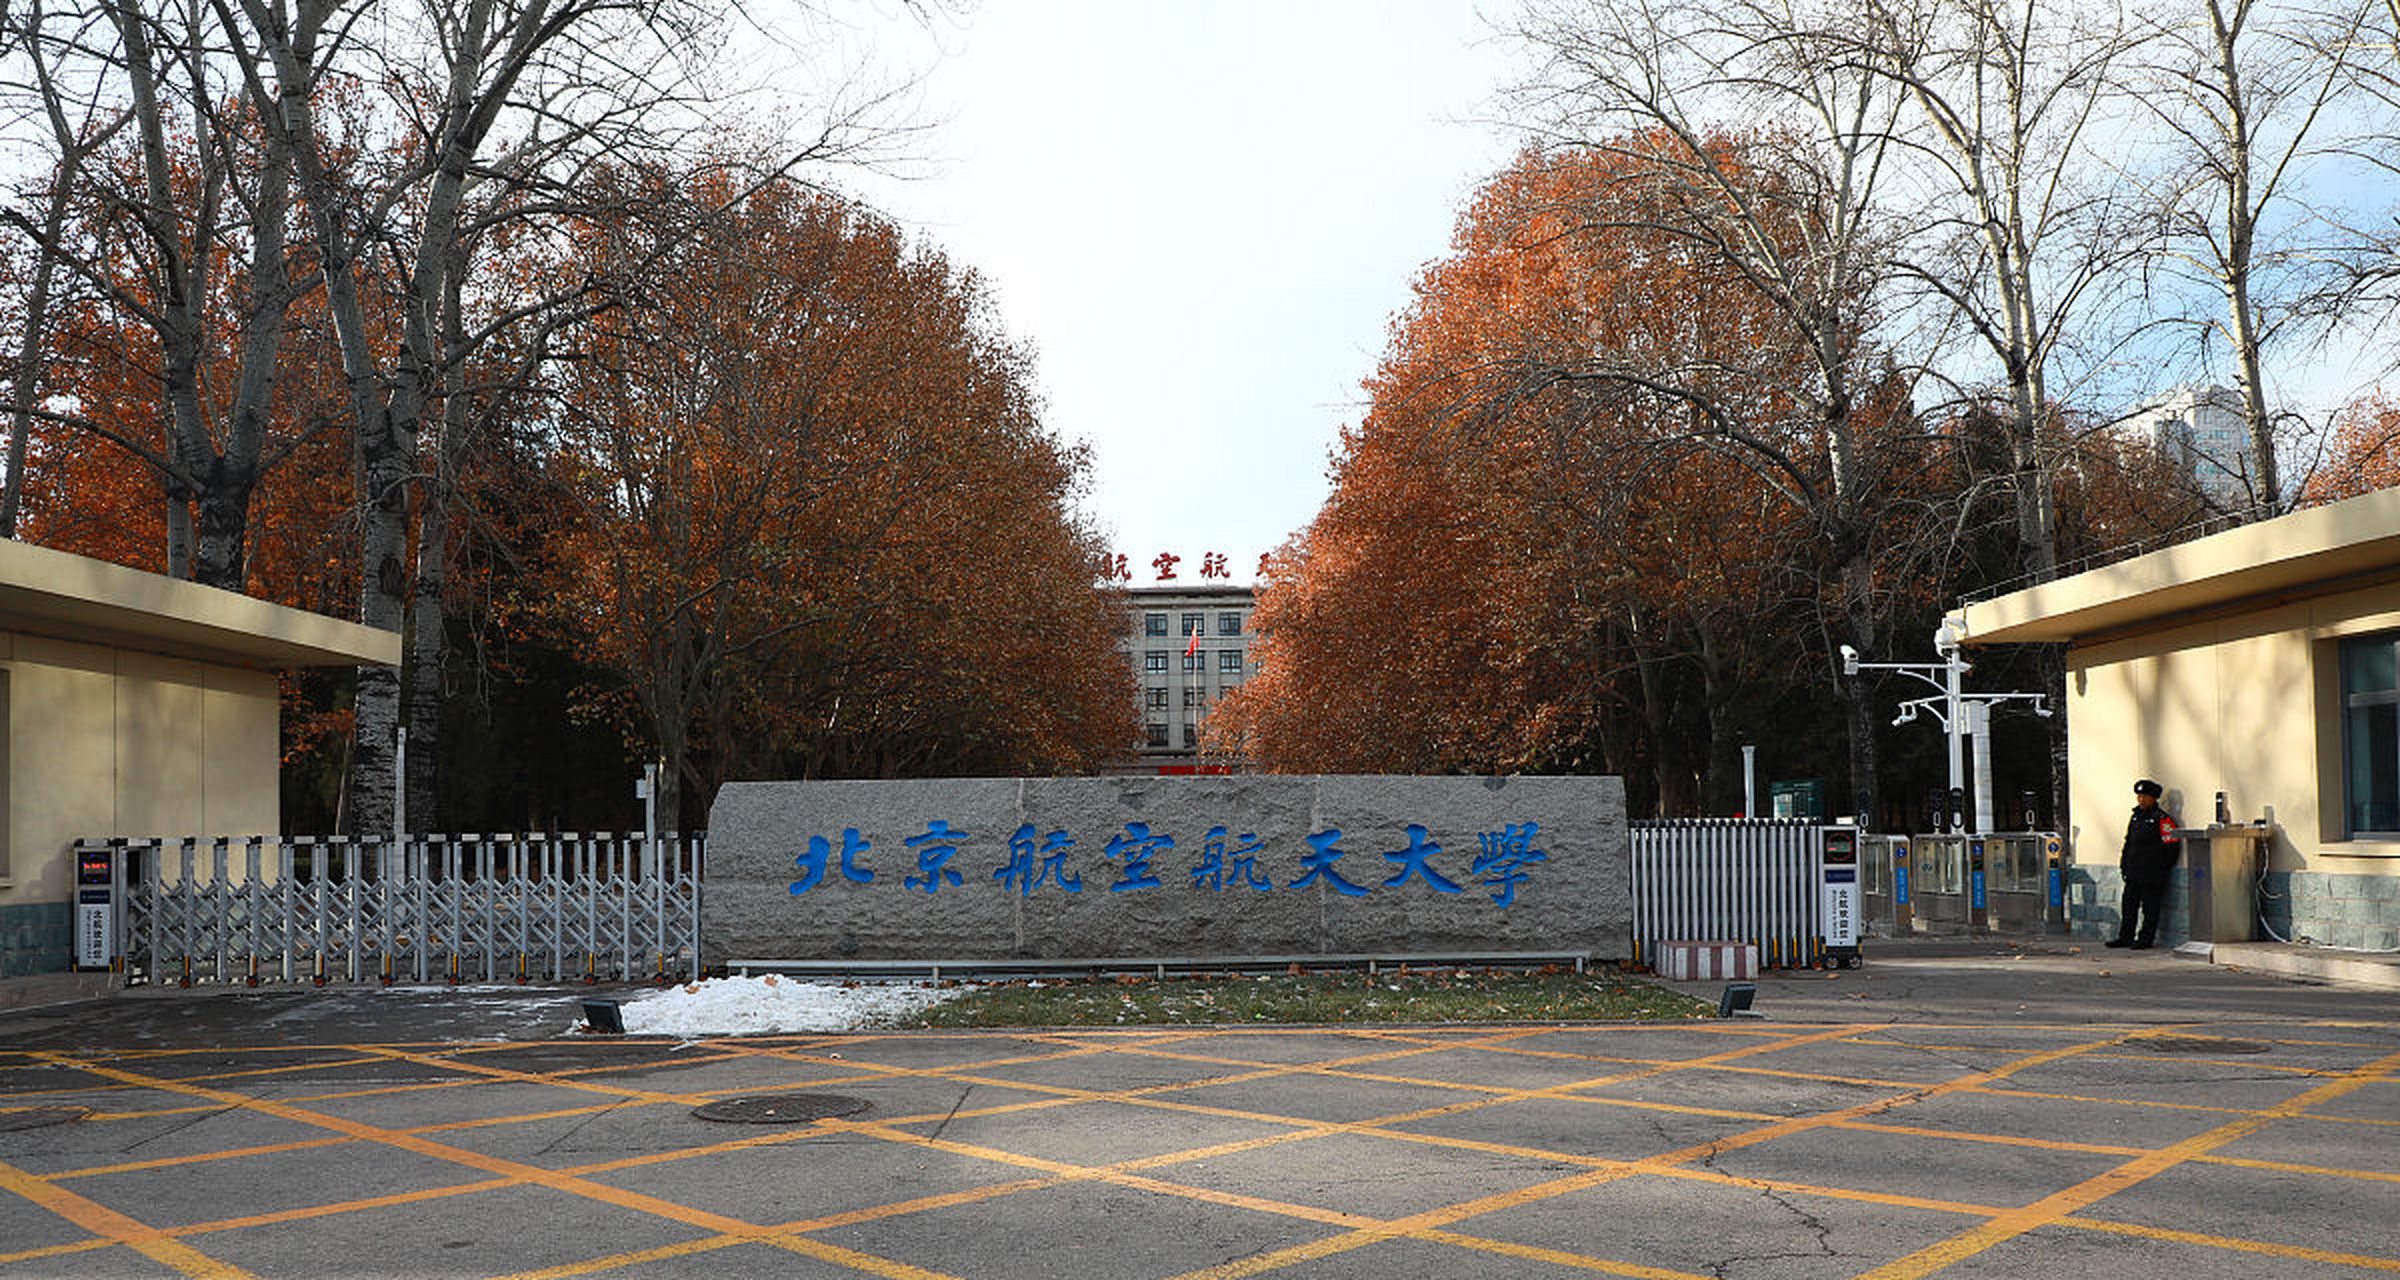 毕业即就业的 10 所大学: 一:北京航空航天大学 二:哈尔滨工业大学